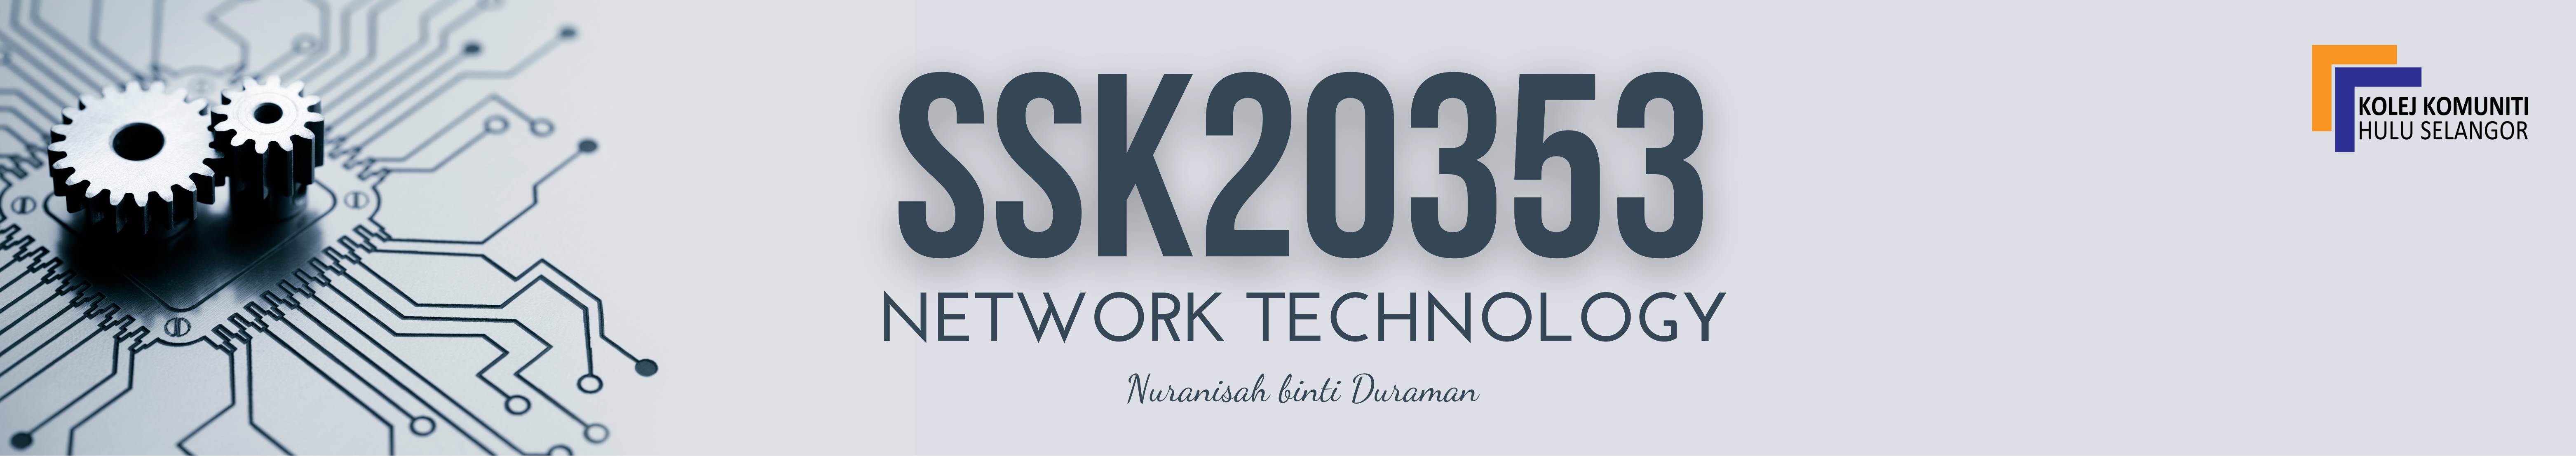 KKHS | SSK20353 NETWORK TECHNOLOGY